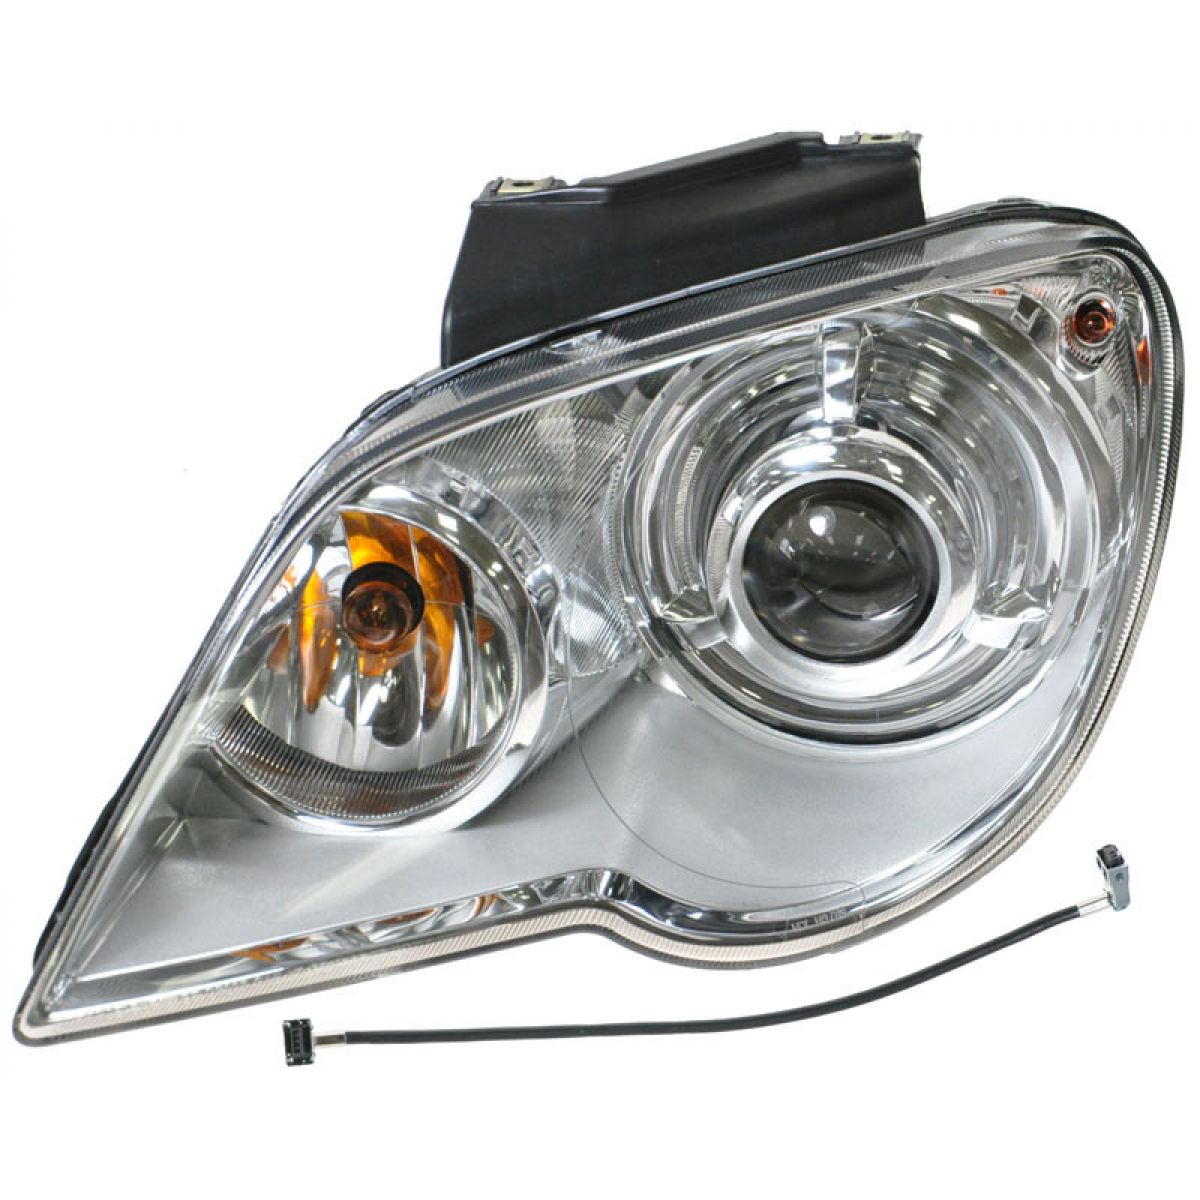 Chrysler pacifica headlights bulbs #2